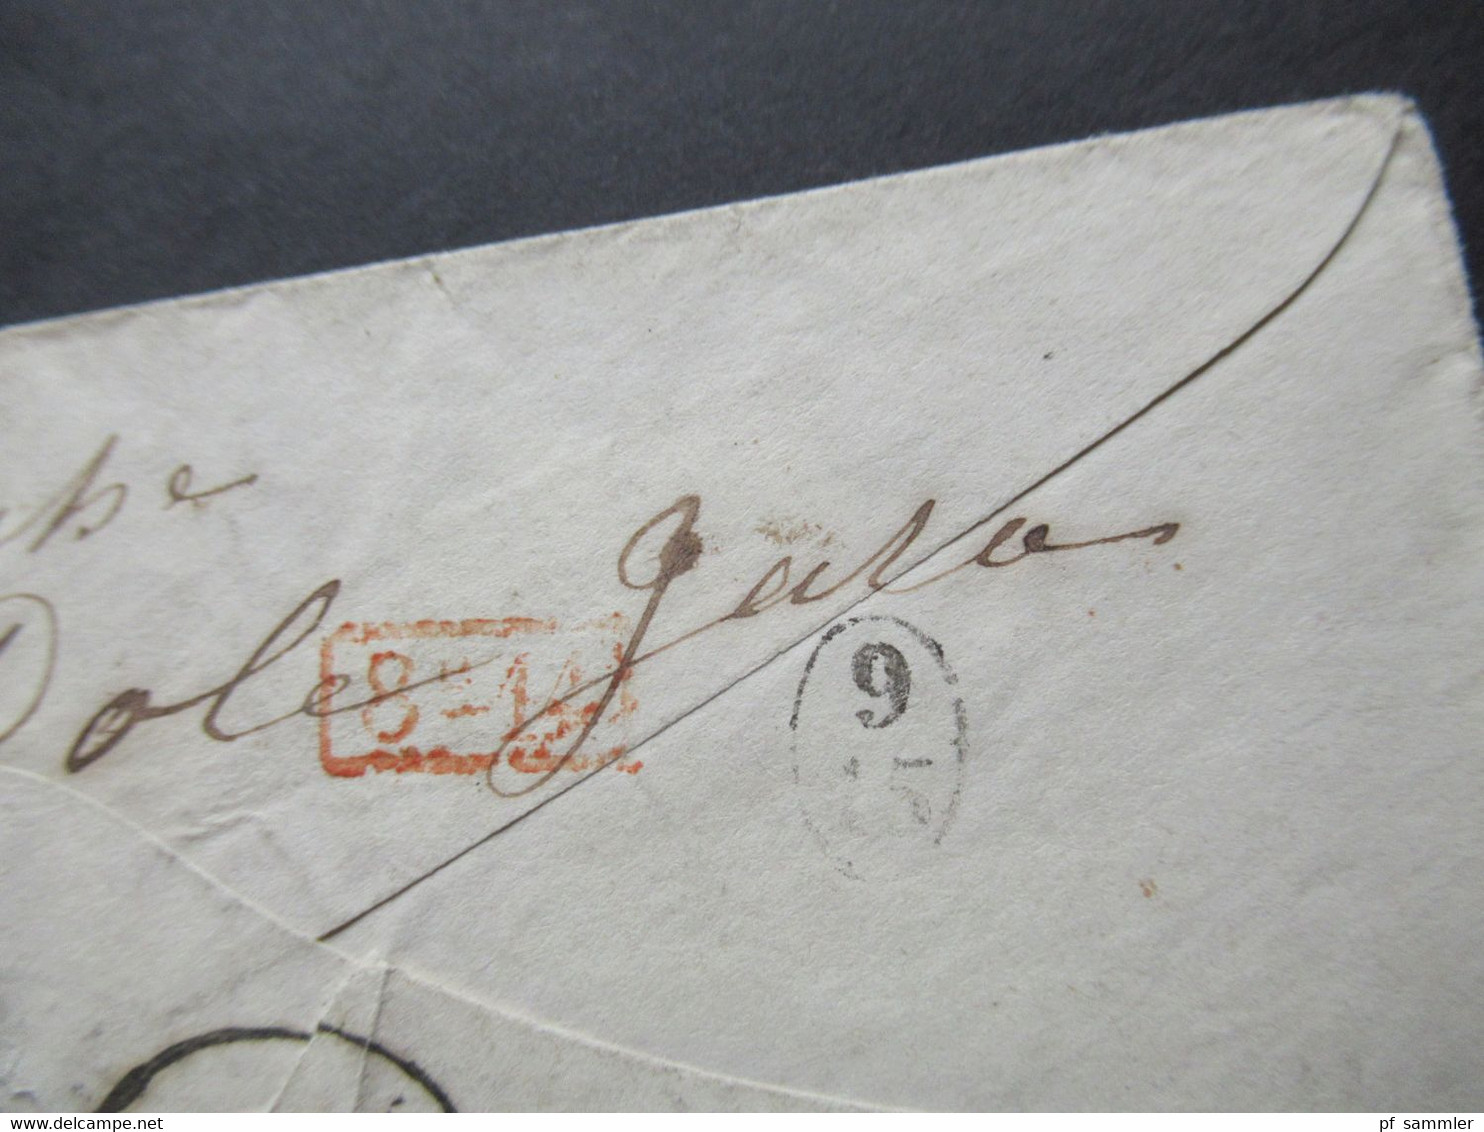 Kleiner Umschlag 1859 Stempel K1 Milano und Taxstempel Chiffre 8 / roter K2 Autriche 2 Culoz 2 nach Paris par Dole